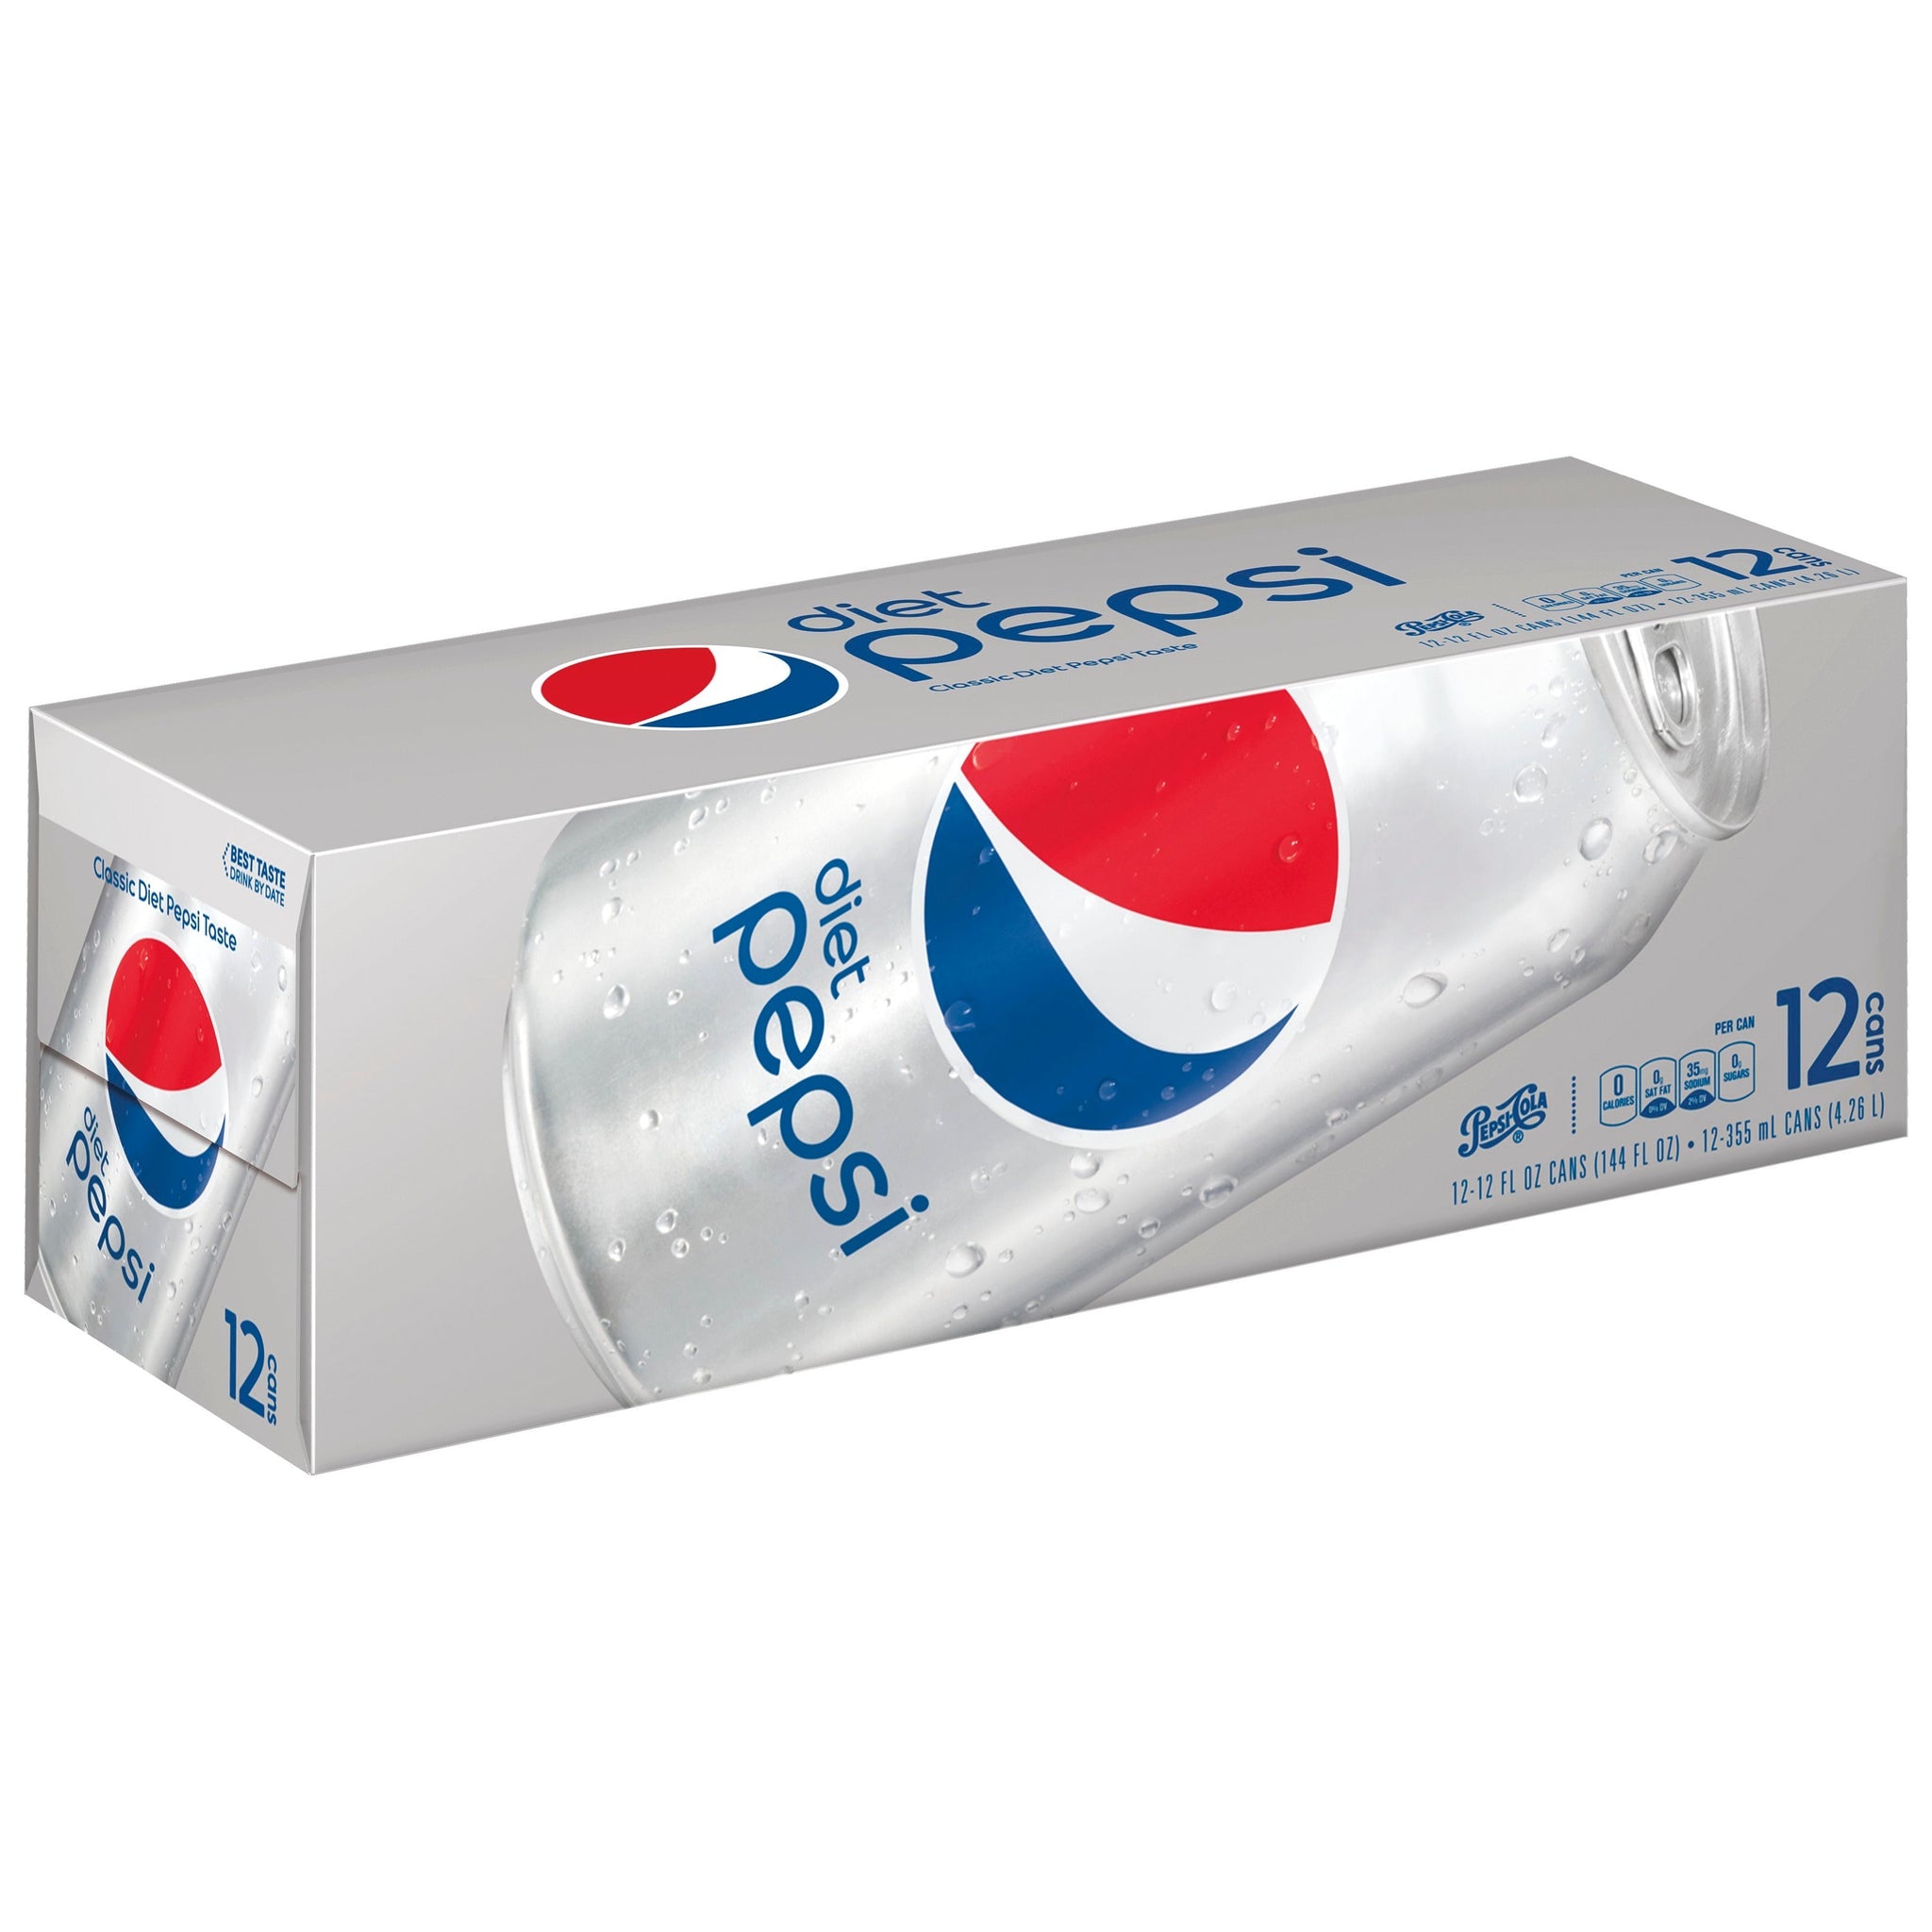 stm>Pepsi Diet, 12 pack